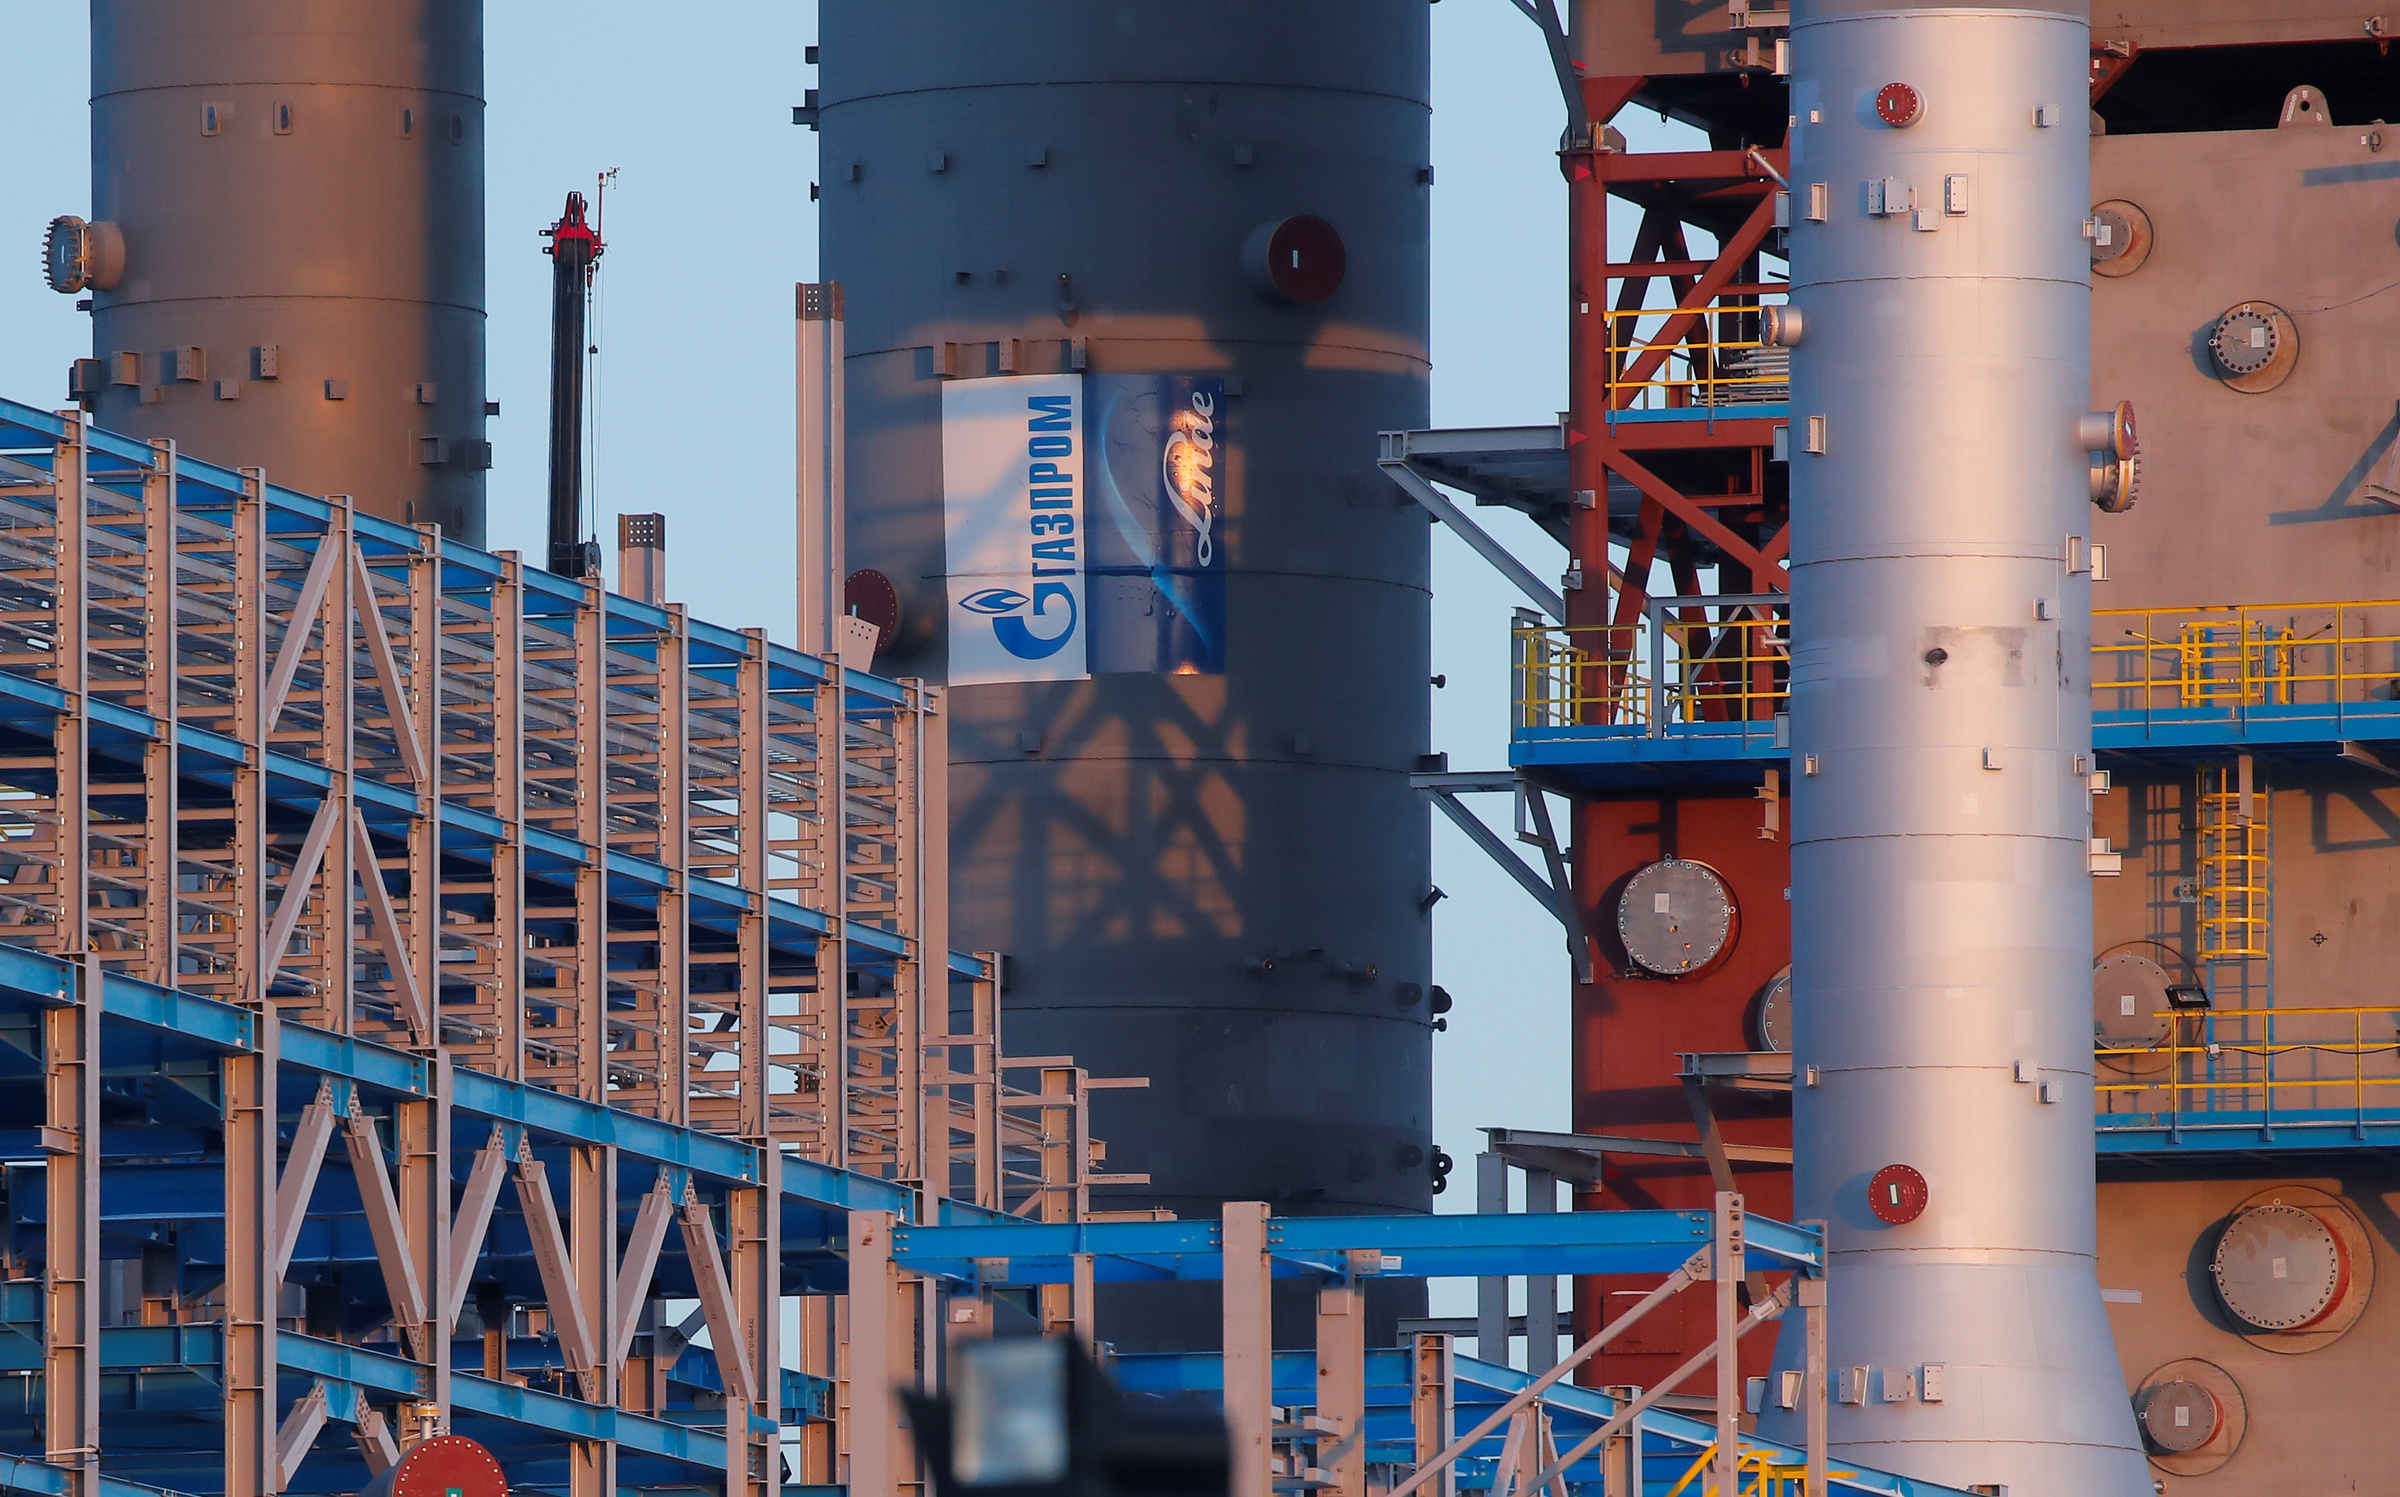 Nhà máy Năng lượng Siberia của Gazprom, nơi xử lý khí đốt khai thác ở vùng Viễn Đông nước Nga, vào tháng 11/2019. Ảnh: Reuters.